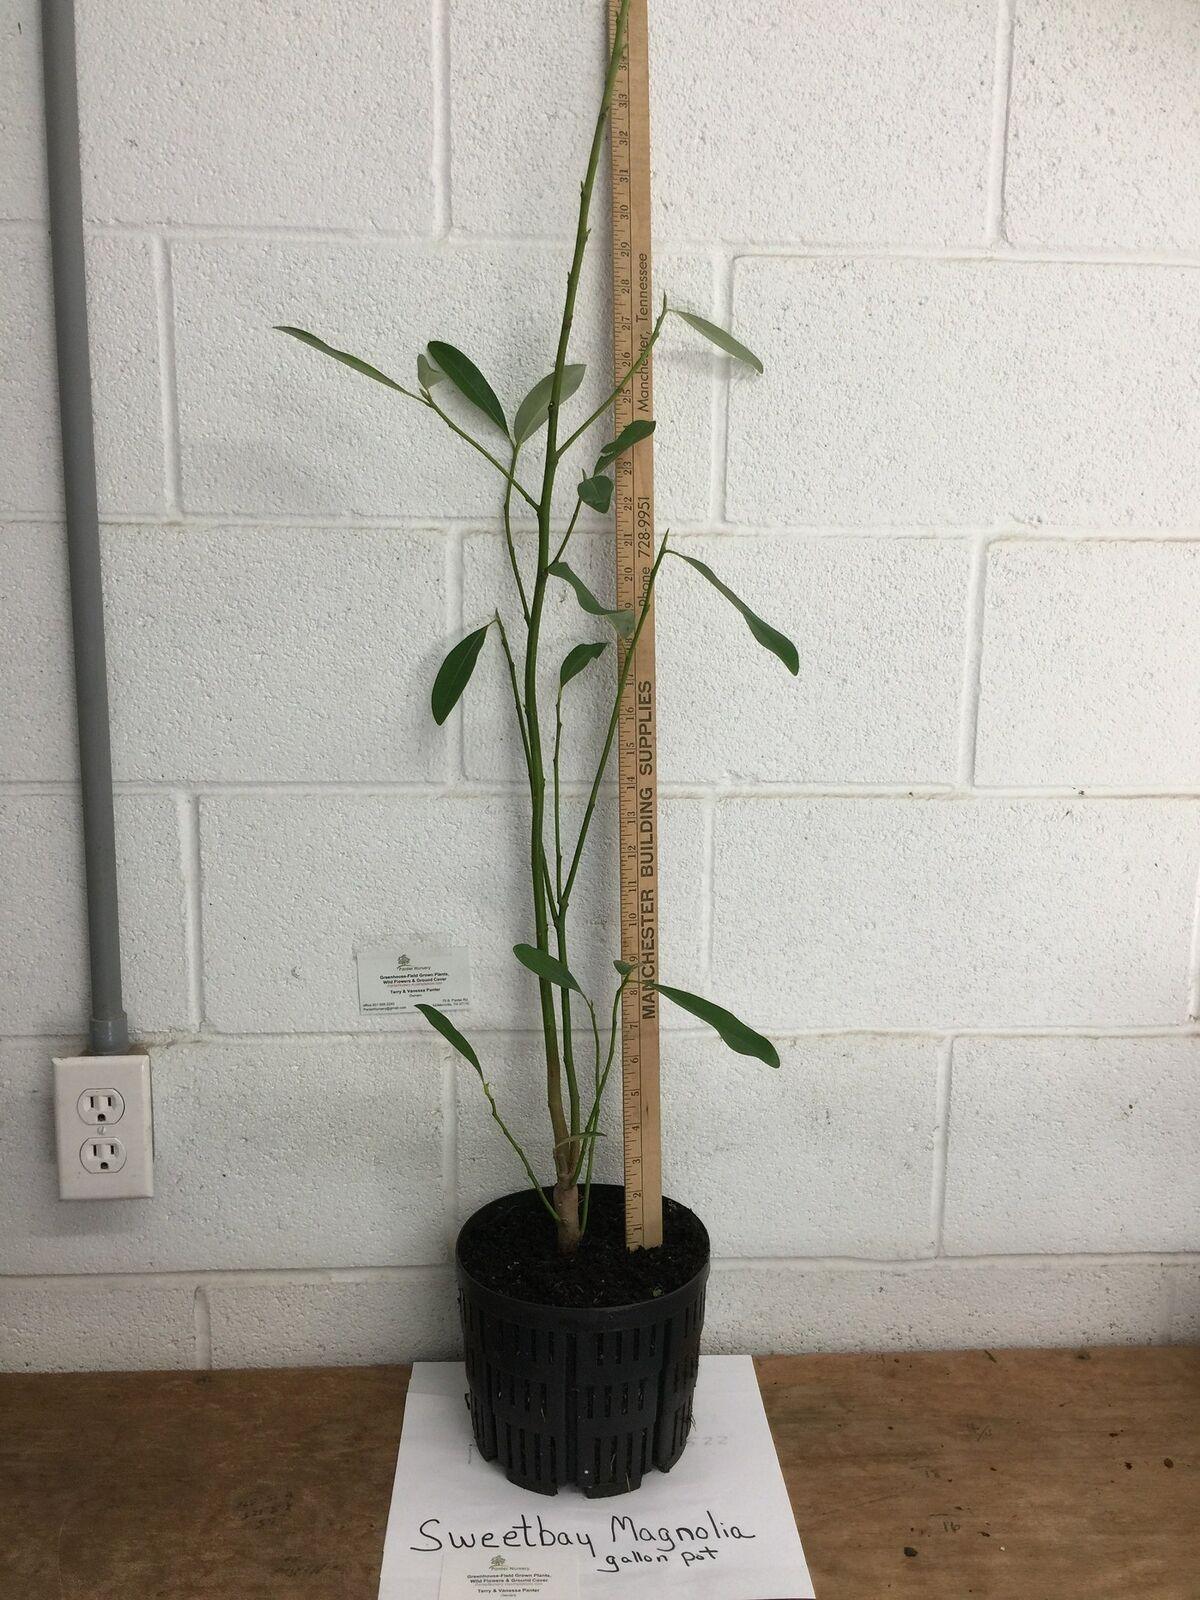 Sweetbay Magnolia Tree - 24-36" Tall Live Plant, Gallon Pot, Magnolia virginiana - The Nursery Center